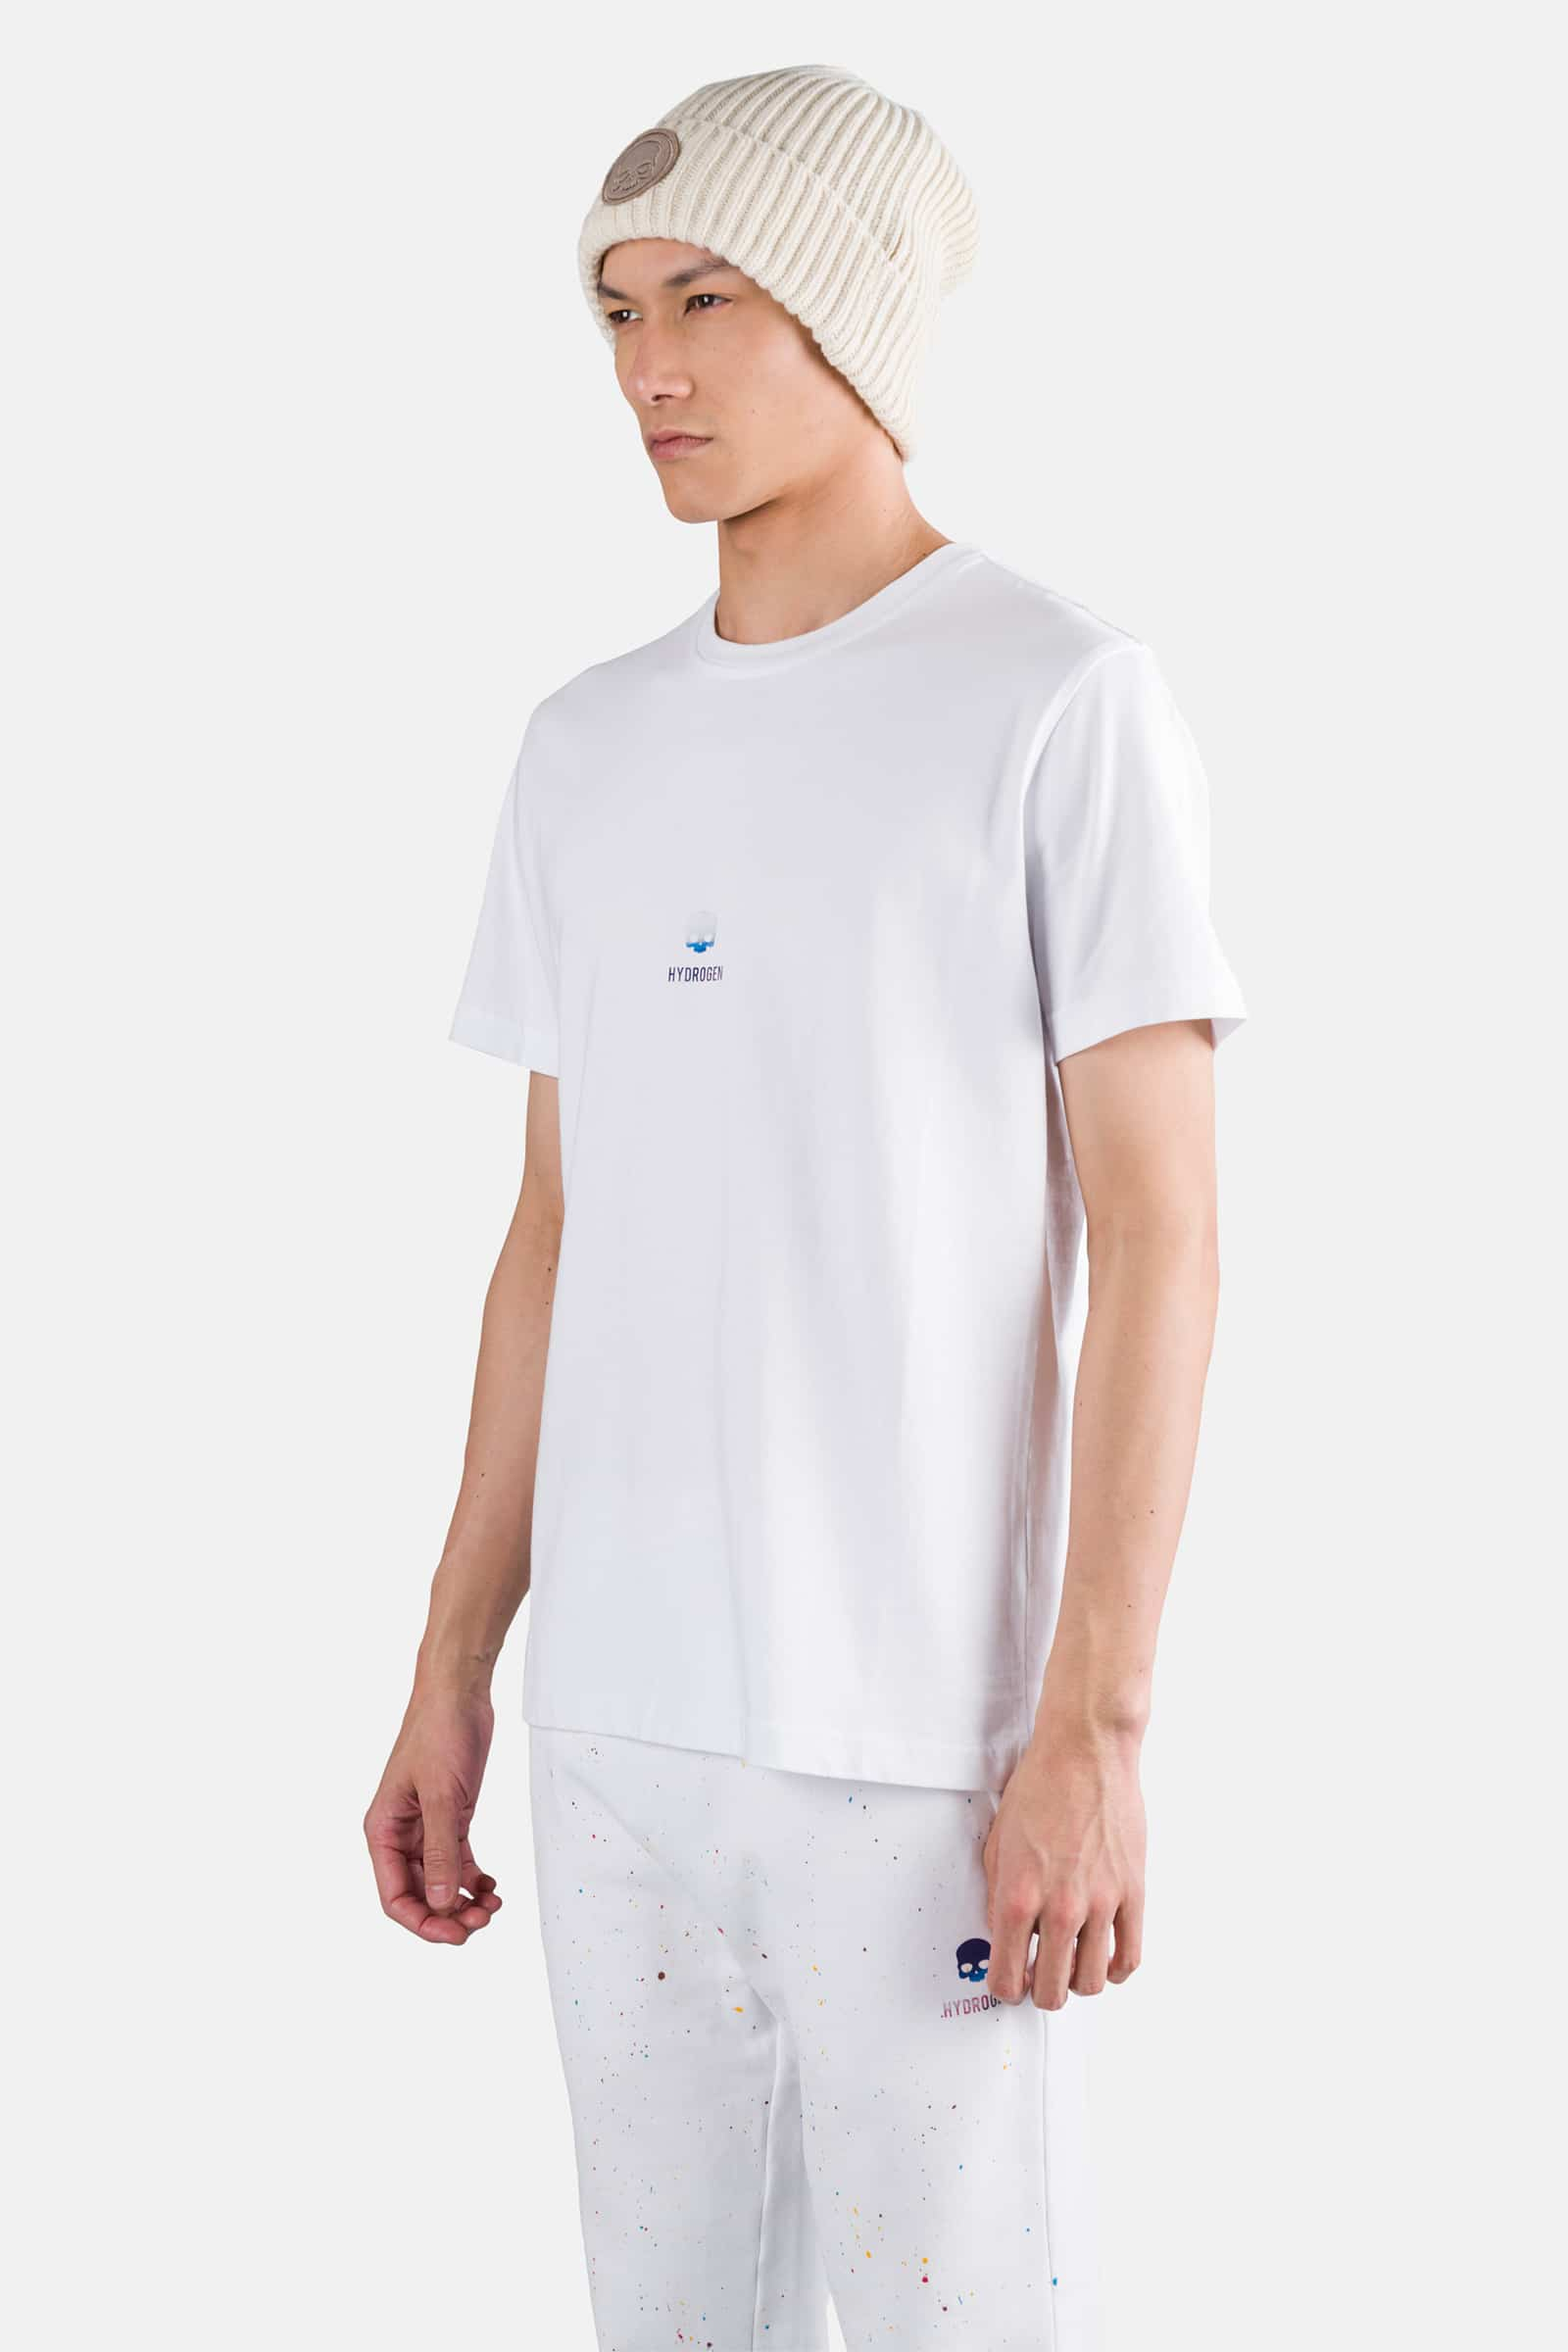 T-SHIRT CON TESCHIO - WHITE - Abbigliamento sportivo | Hydrogen